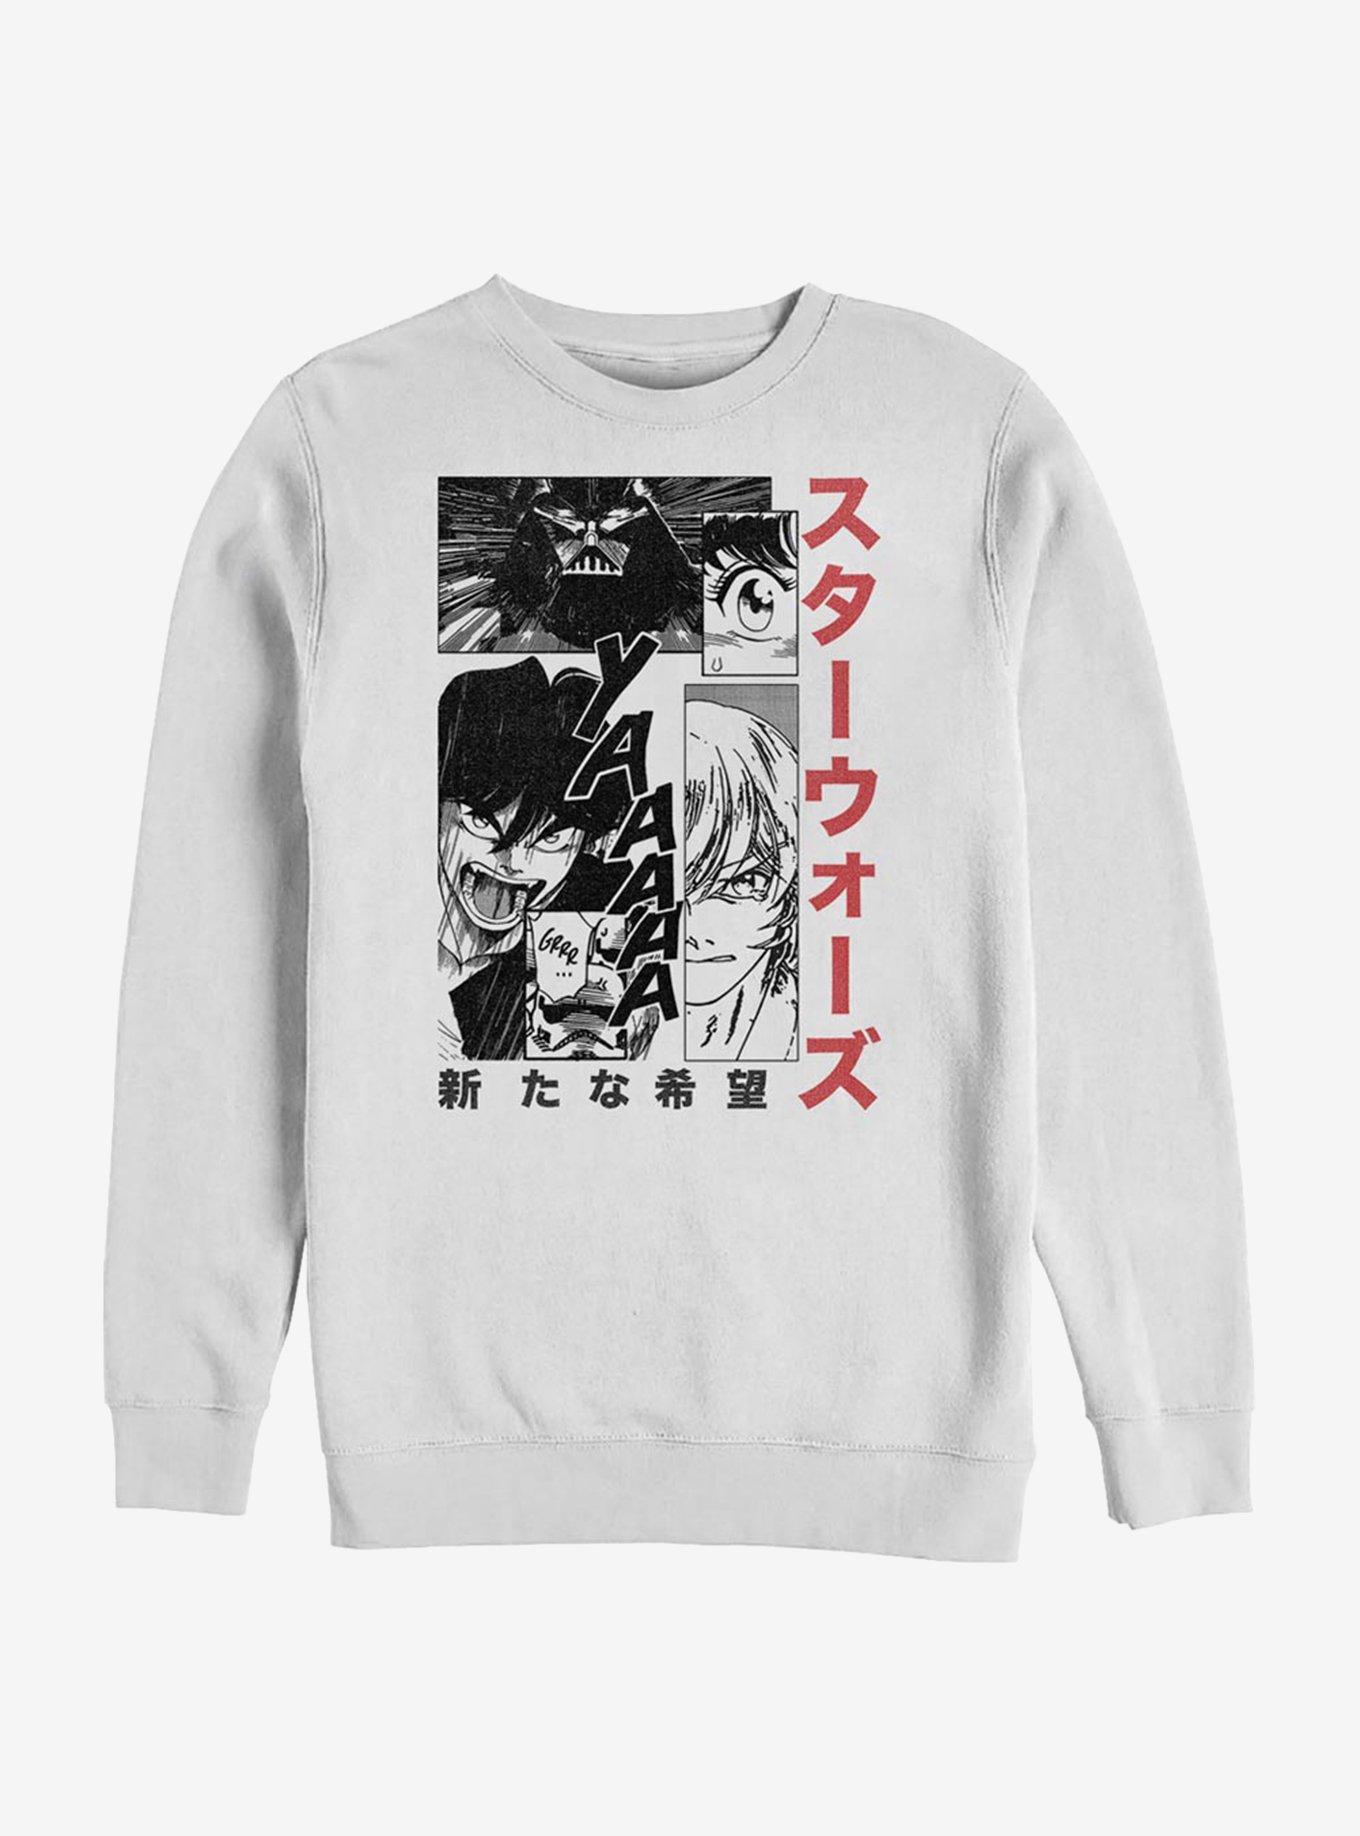 Star Wars Manga Page Sweatshirt, WHITE, hi-res